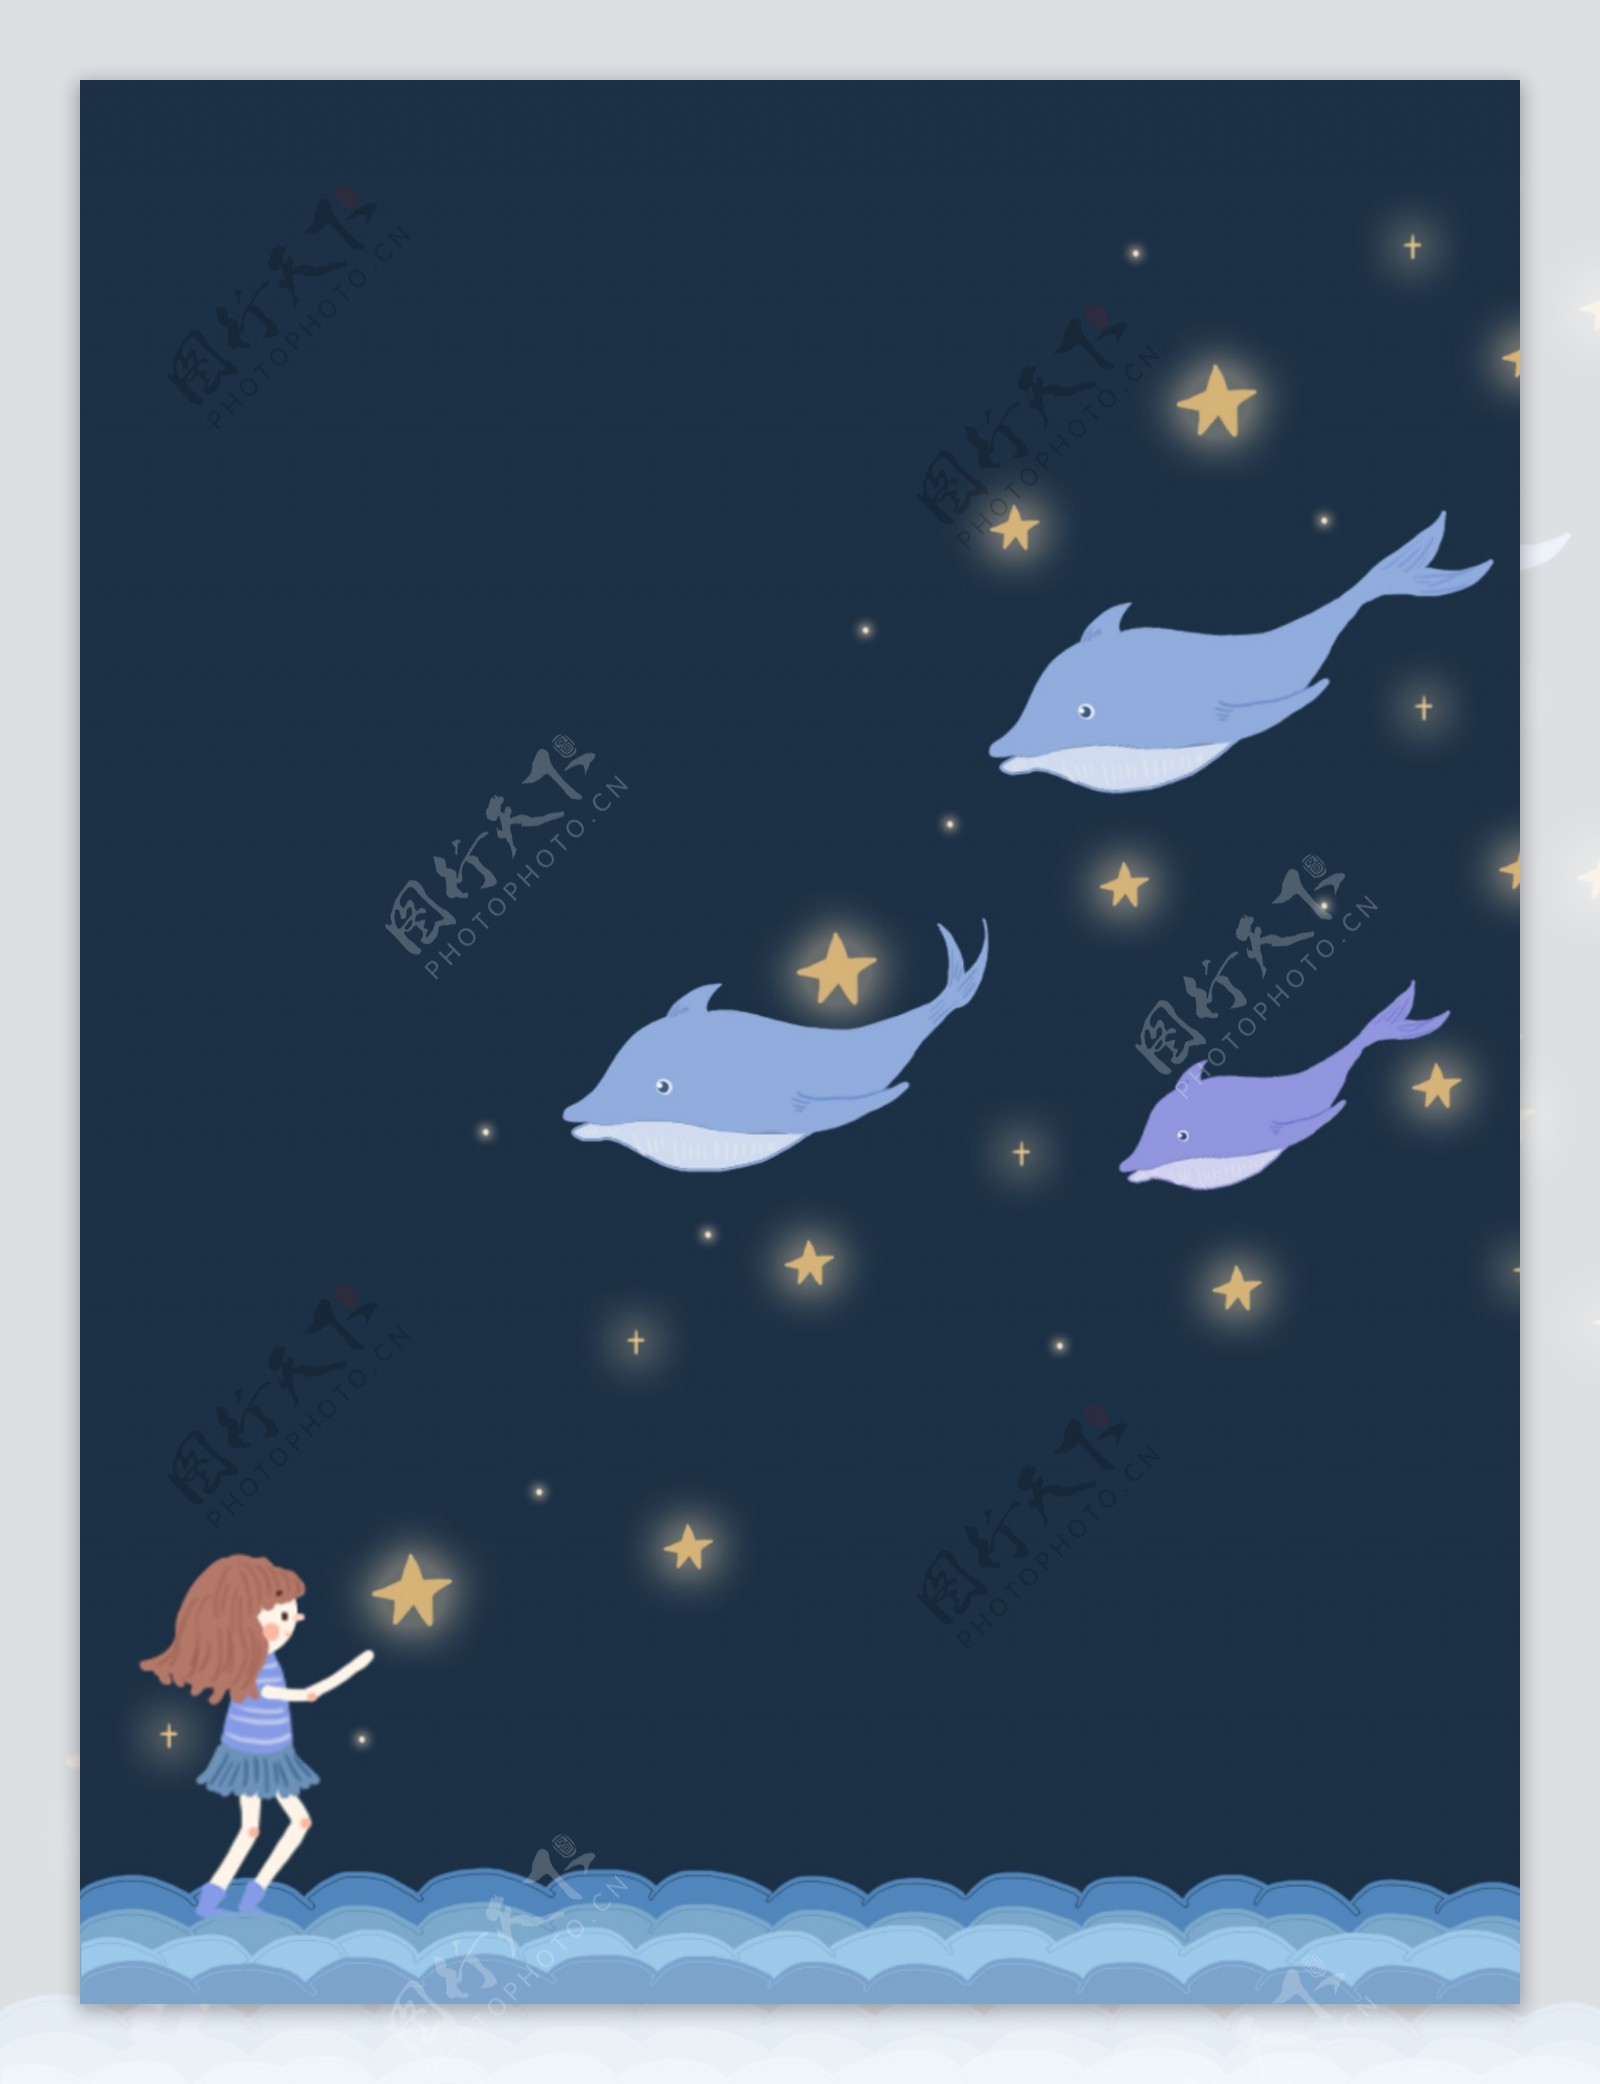 手绘梦幻少女与鱼在夜空和星星下的背景素材